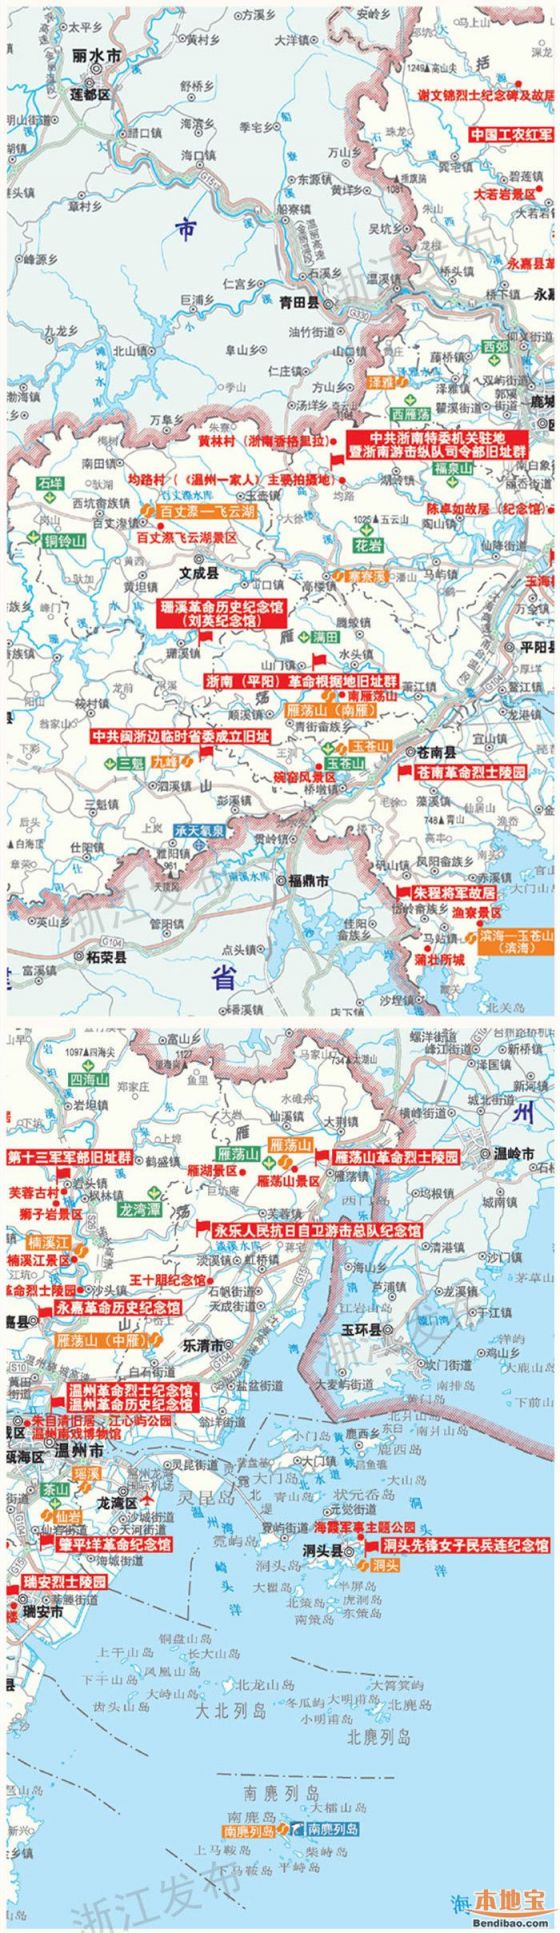 浙江红色旅游地图 看革命圣地和山水风光